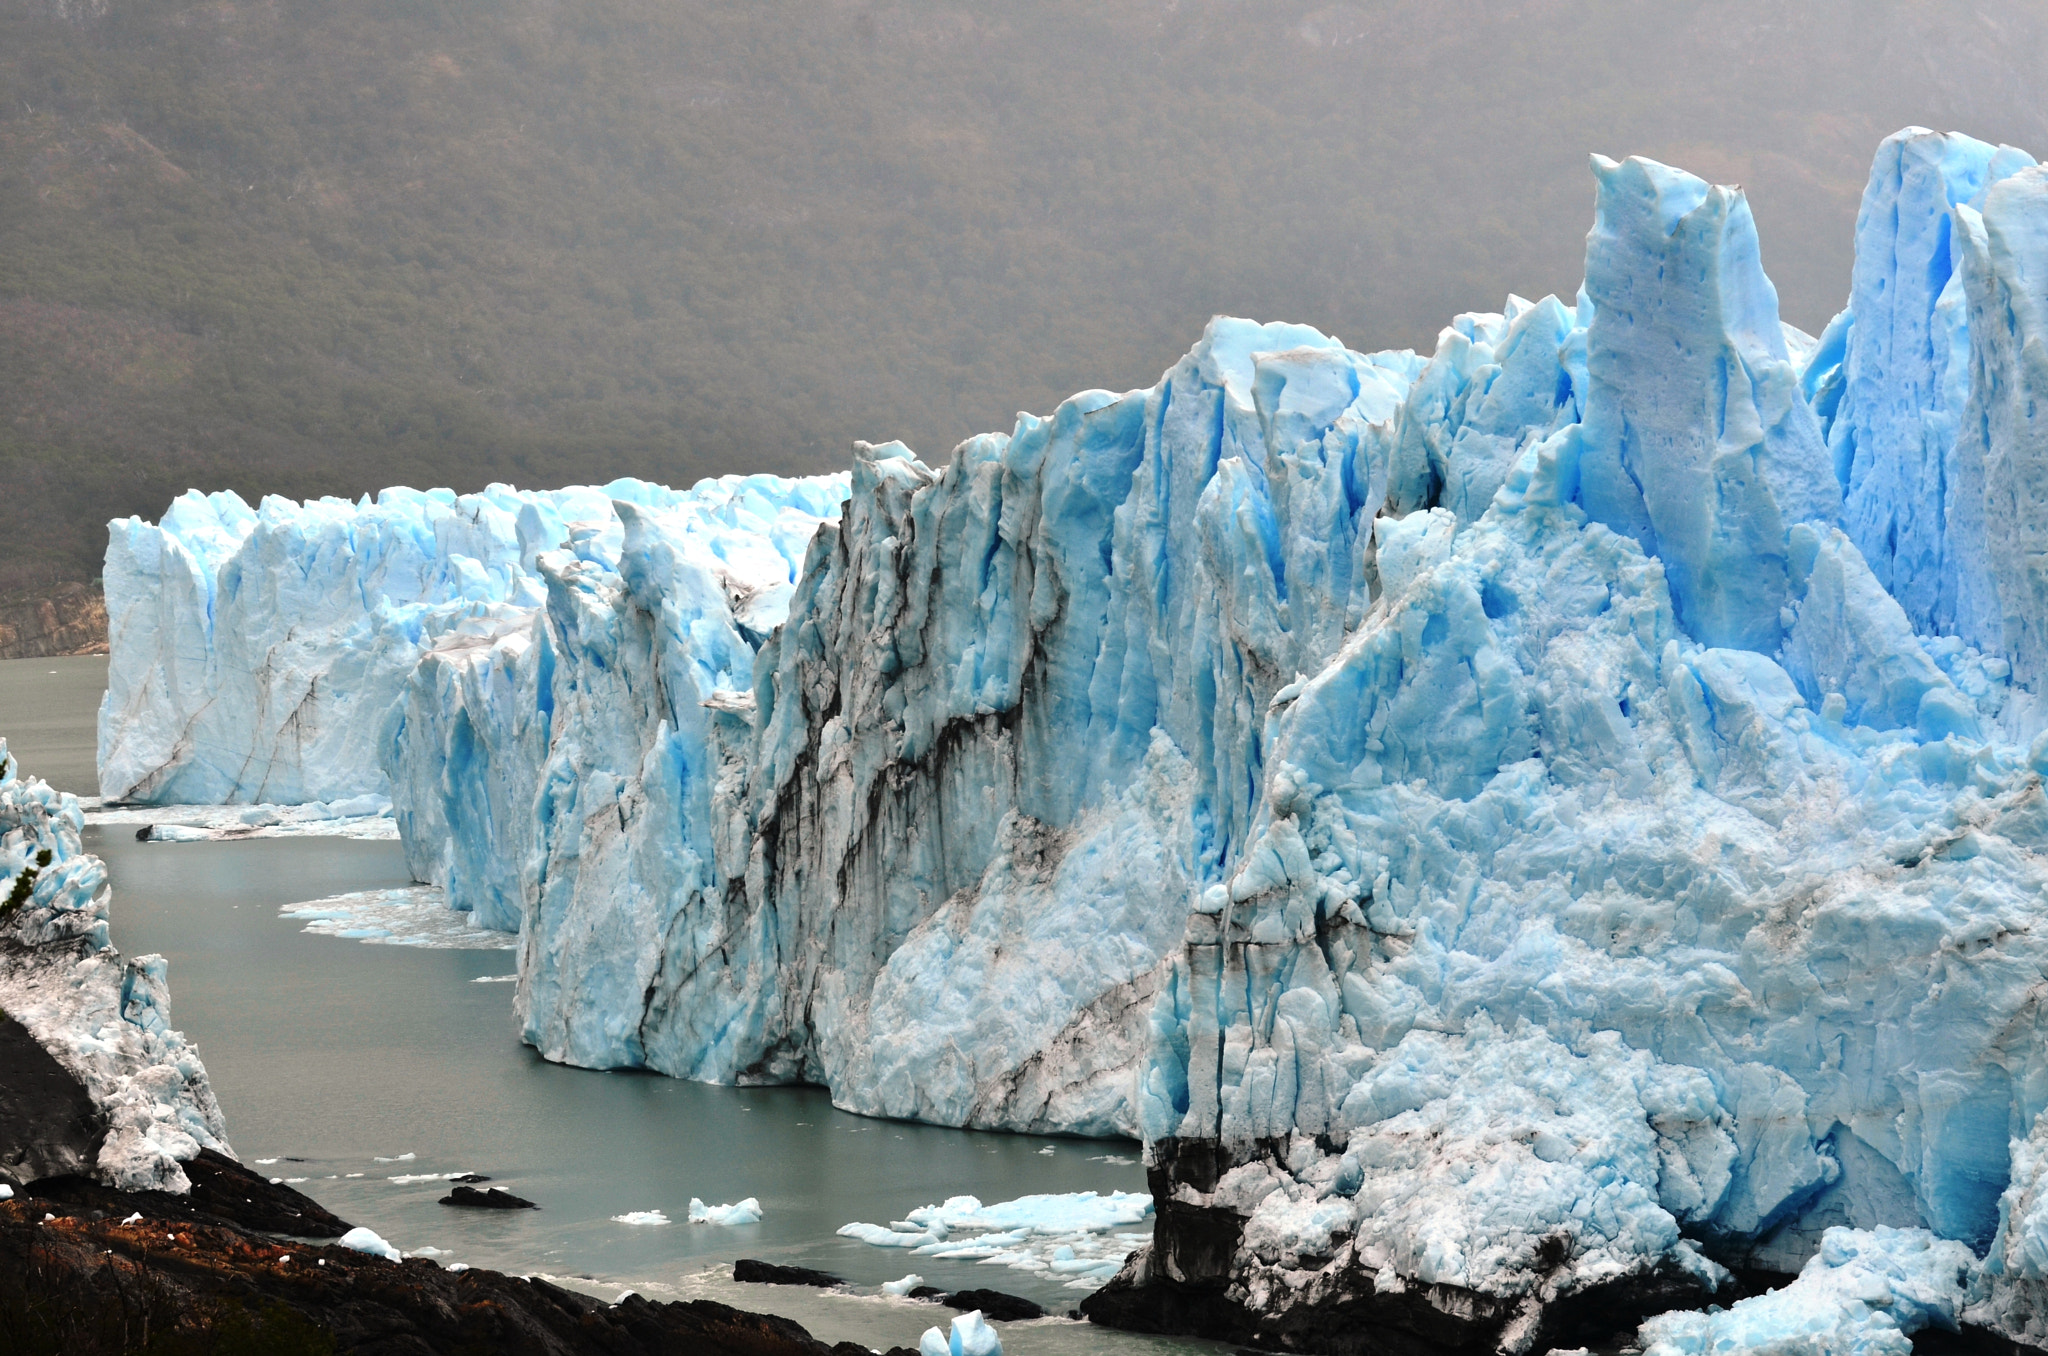 Nikon D7000 sample photo. Parque nacional los glaciares photography